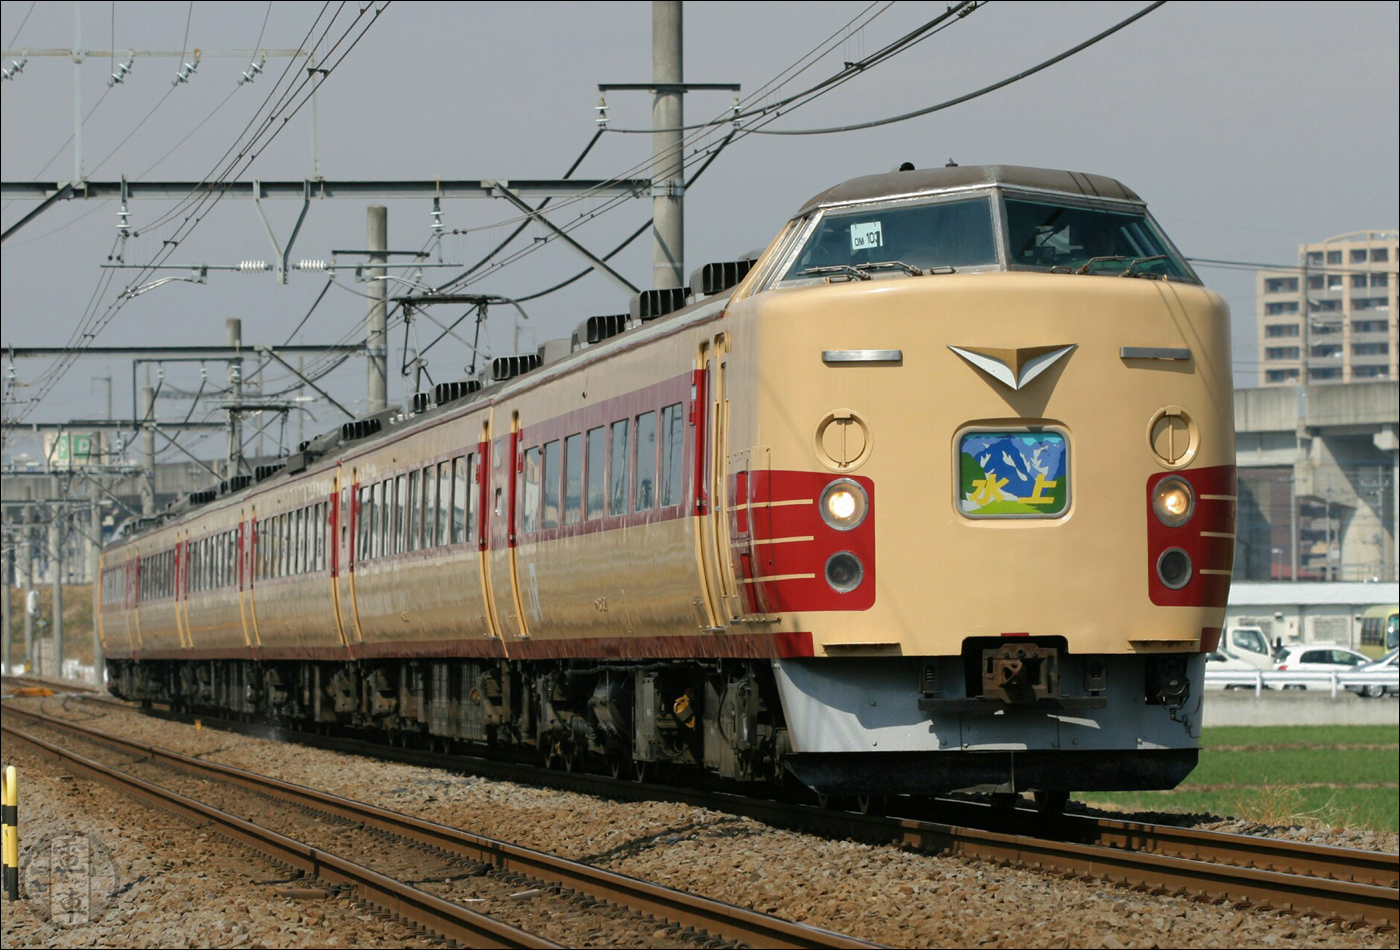 Az egyik utolsó fennmaradt 183-1000-es sorozatú motorvonat a Joetsu vonalon közlekedő „Minakami” különvonatként 2014-ben. A jármű egy részét 2015 márciusában selejtezték, két kocsiját viszont 2015 áprilisa óta egy kiállítás részeként tekinthetjük meg. Az 1000-es alsorozat jelentéséről hamarosan többet is olvashatunk!